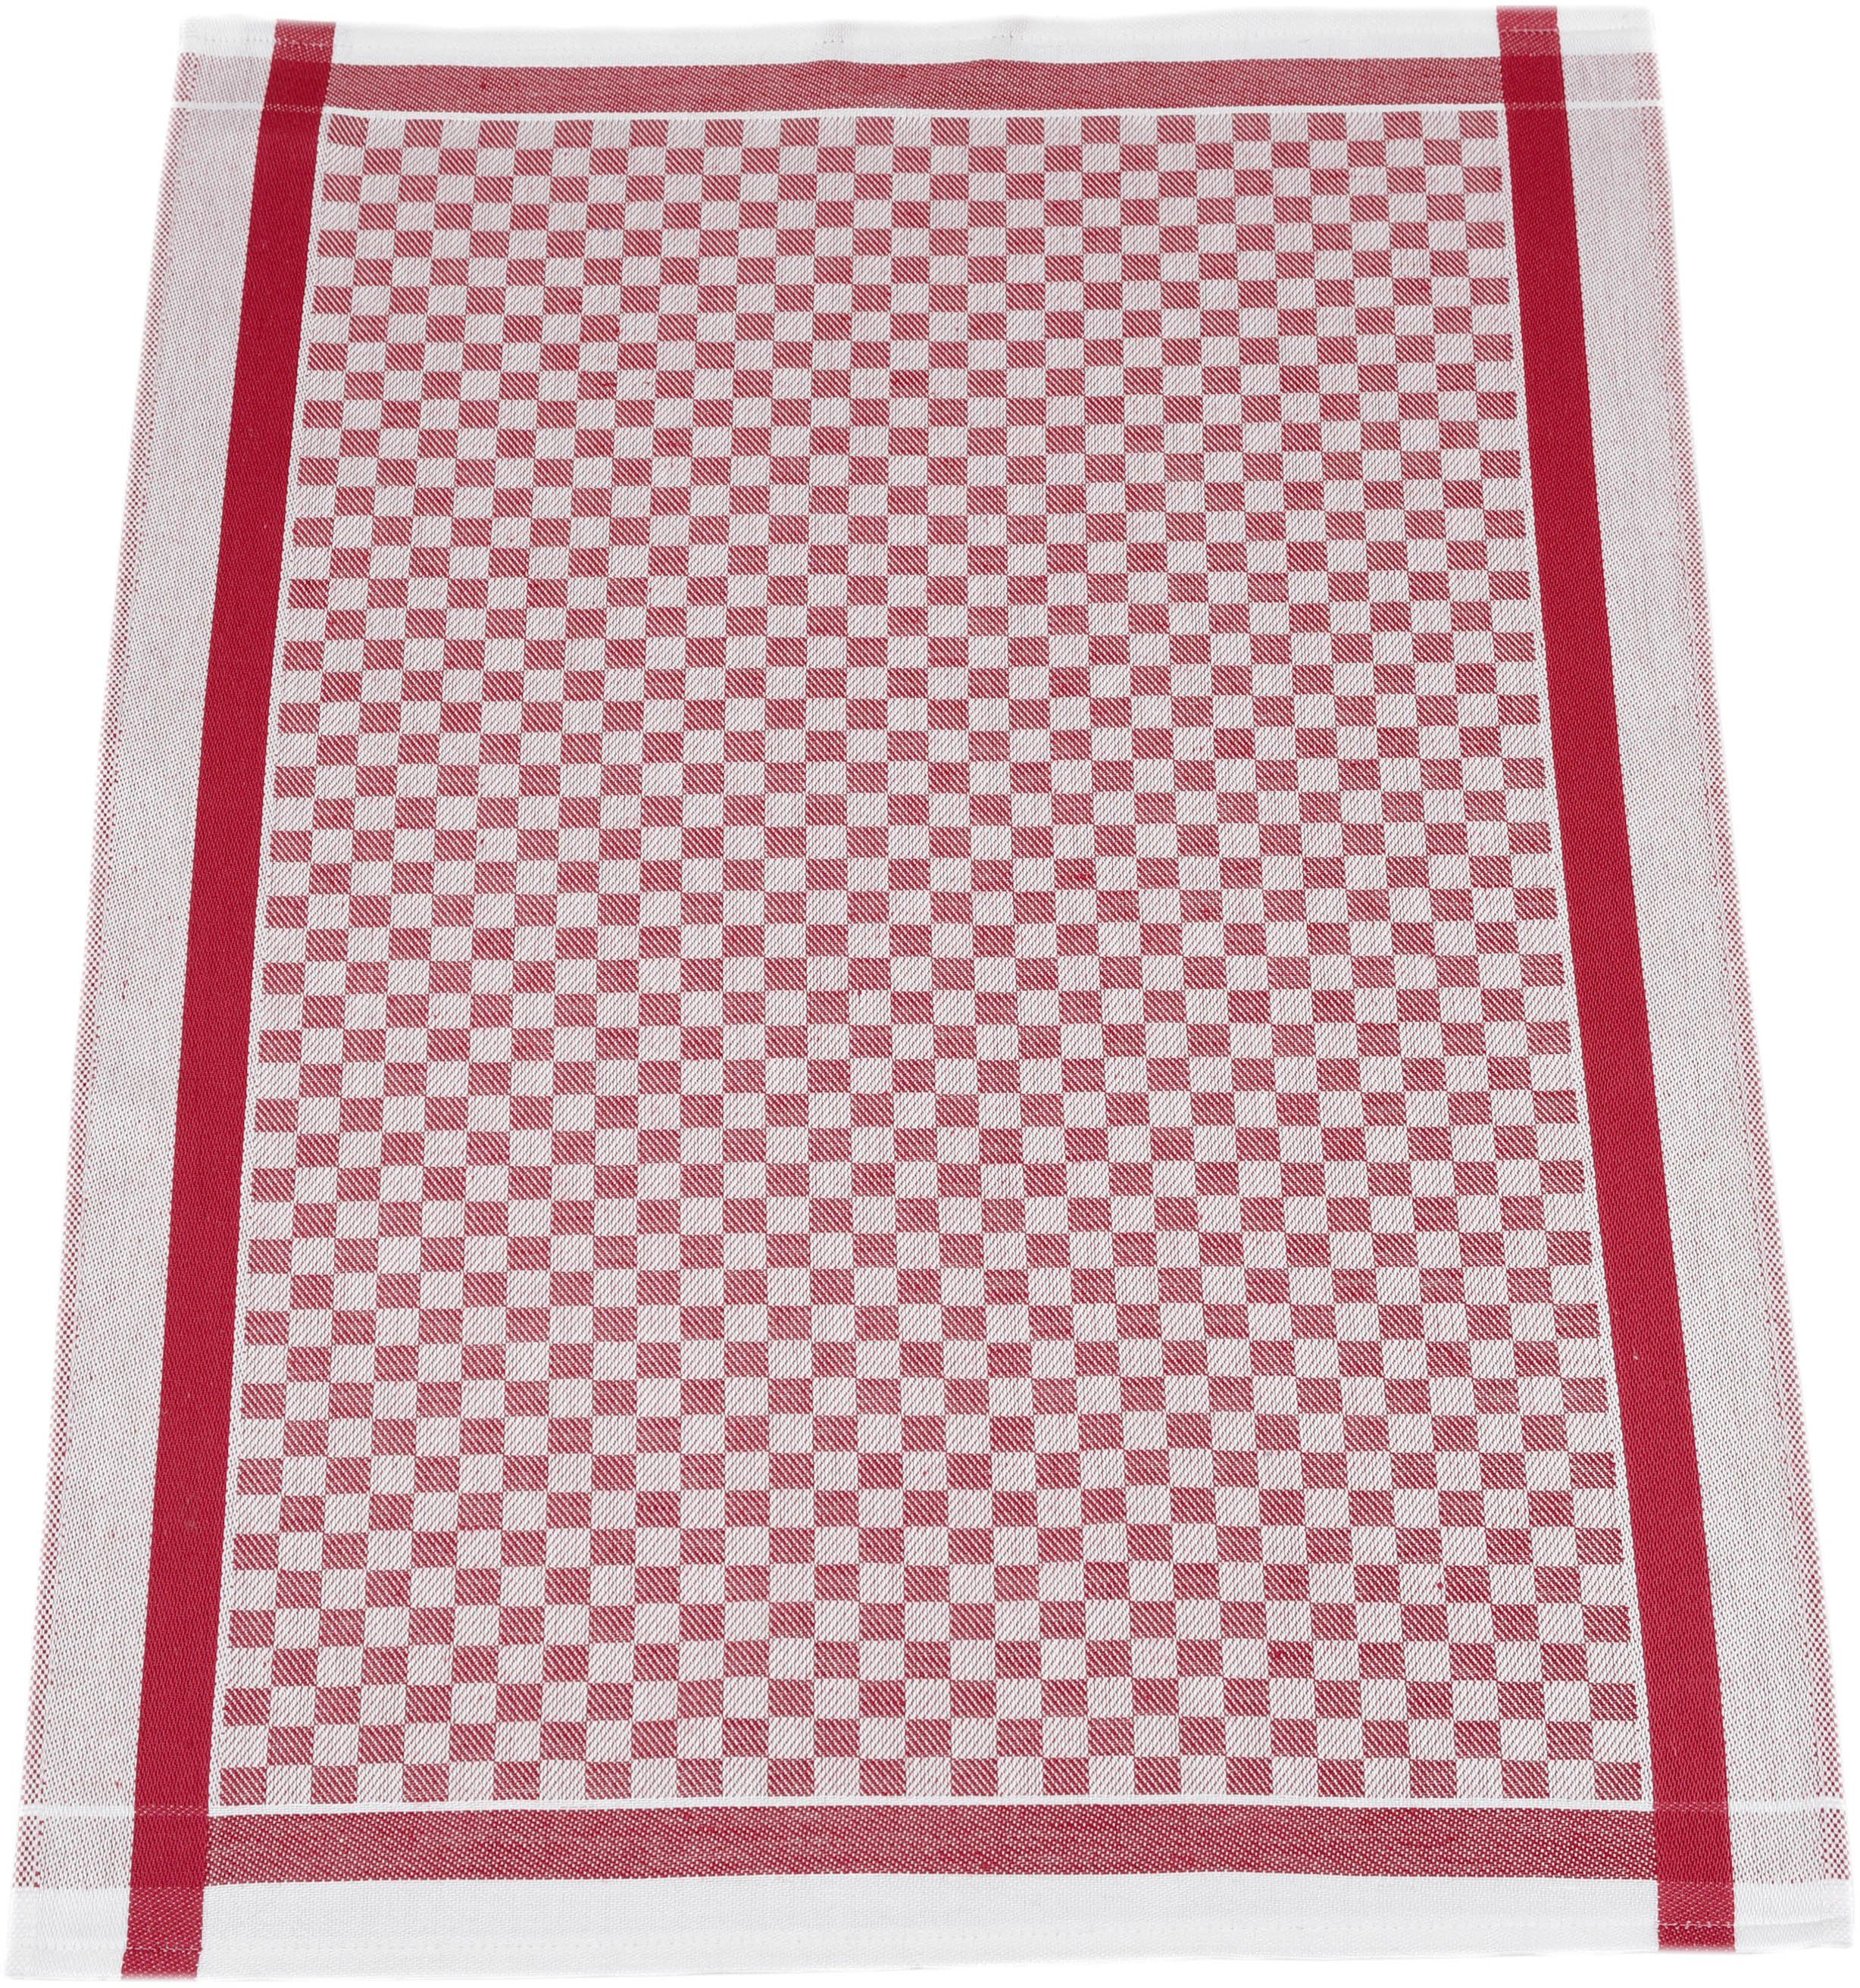 ROSS Exclusiv, Karofond, rot cm (Set, Geschirrtuch 3-tlg), 50x70